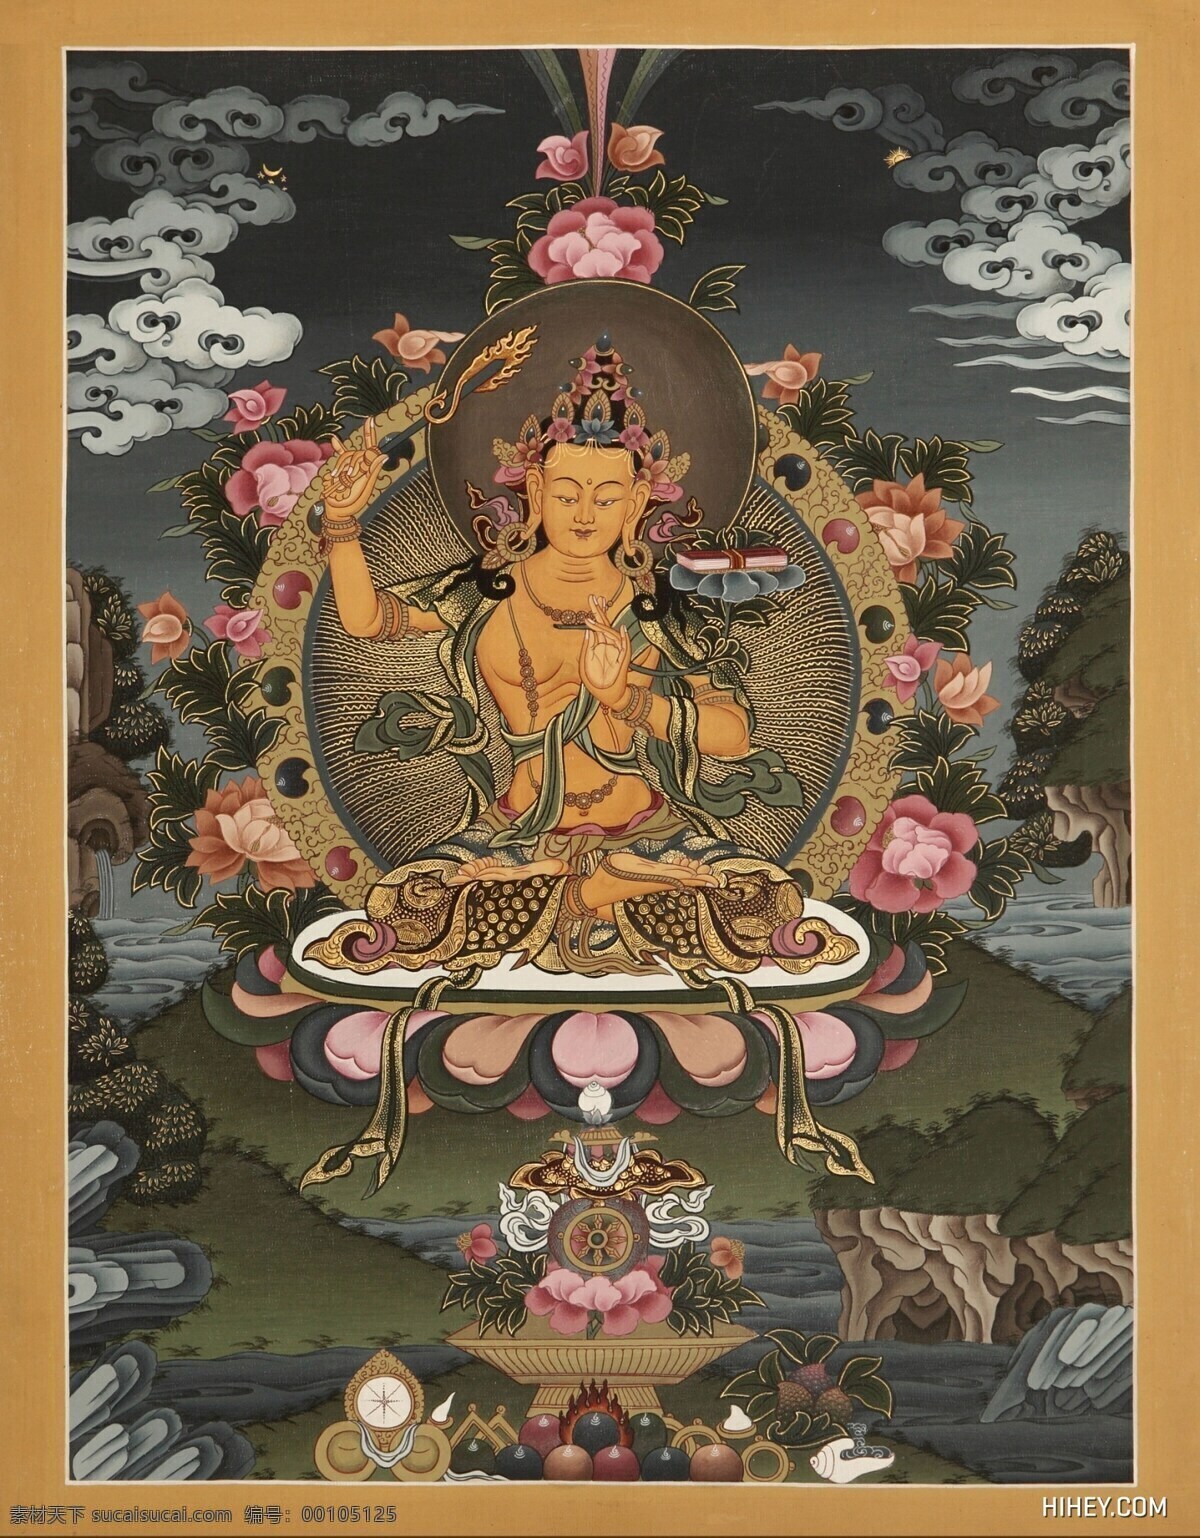 文殊菩萨 文殊师利 西藏 唐卡 西藏佛像 藏传佛像 绘画书法 文化艺术